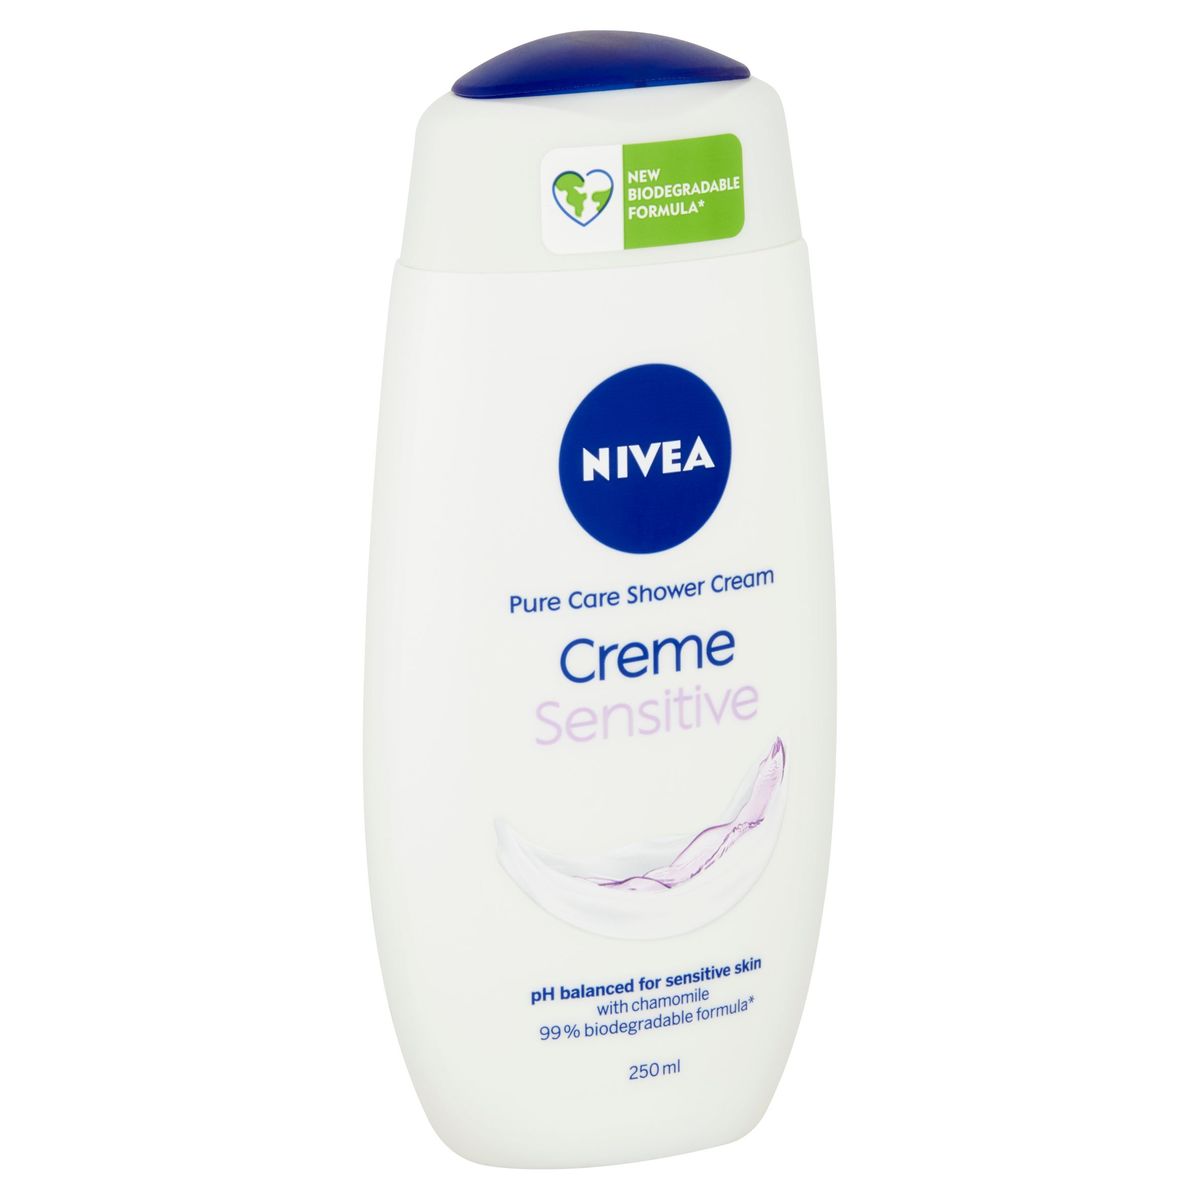 Nivea Pure Care Shower Cream Creme Sensitive 250 ml